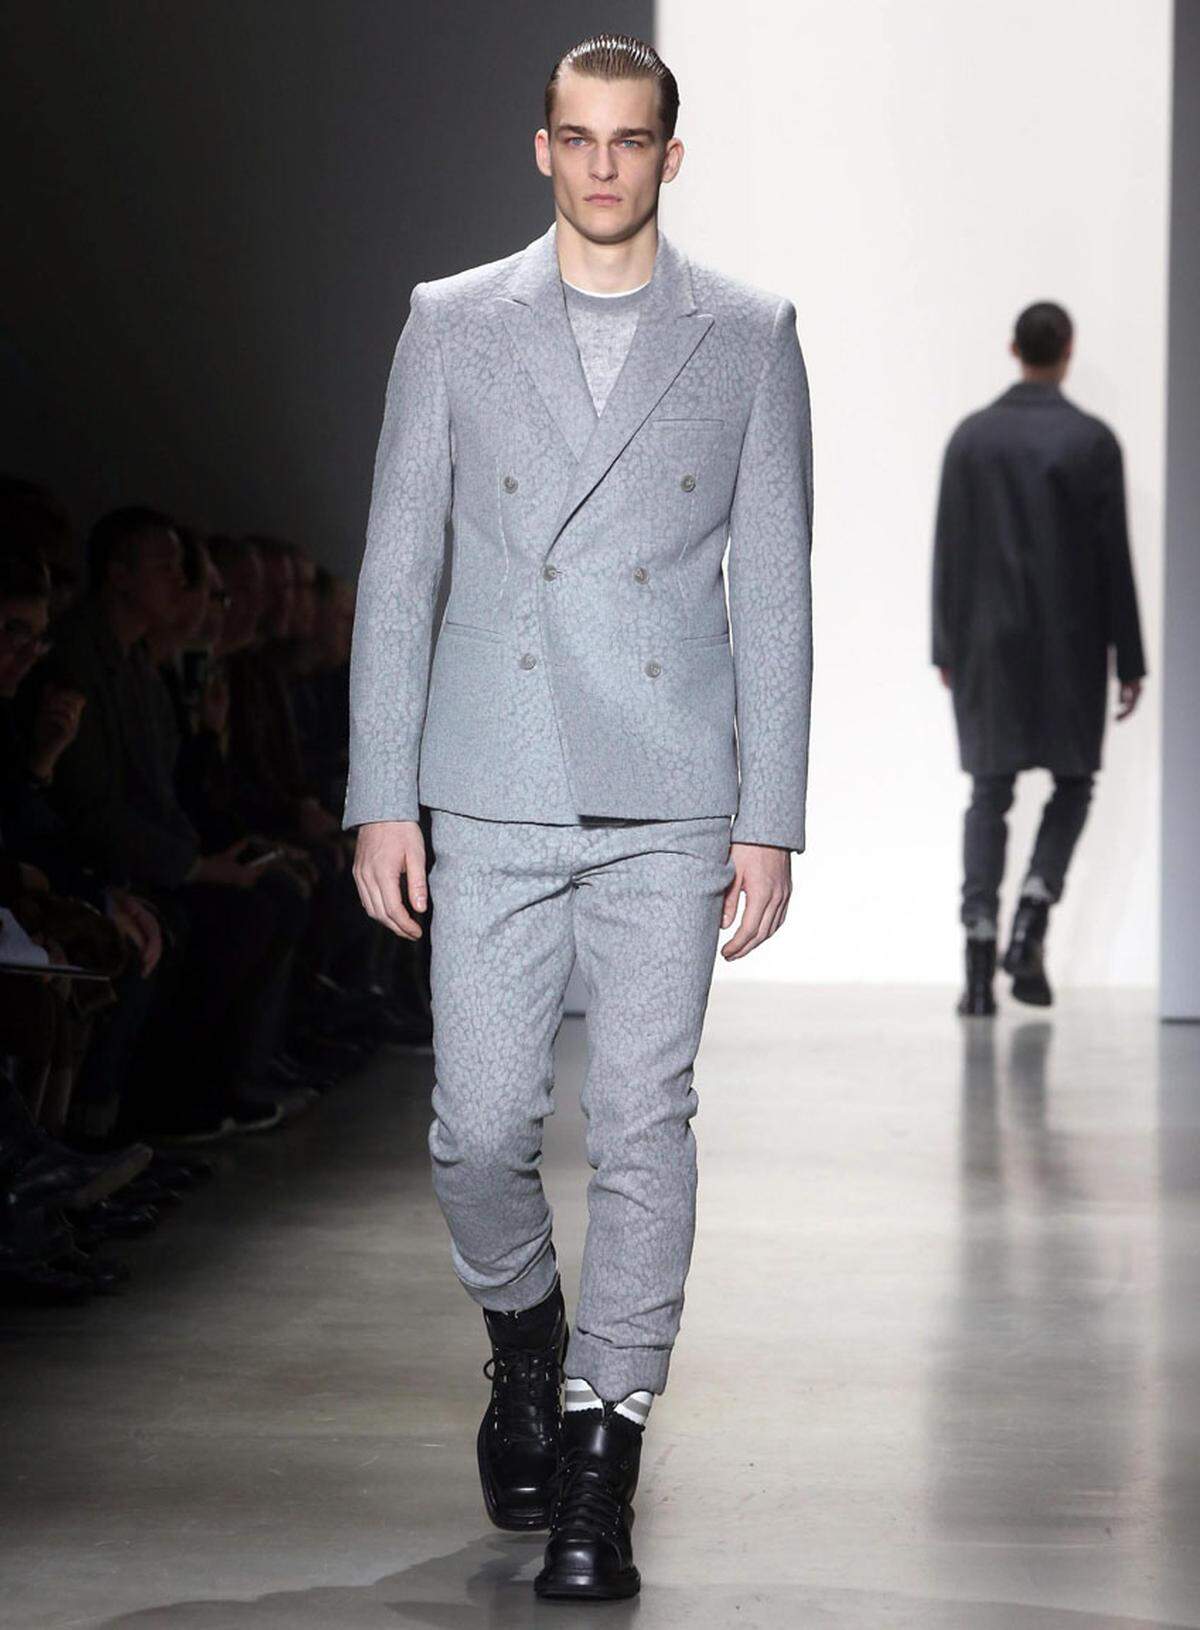 Weitaus tragbarer und klassischer als in London kommen die Männermodentrends in Italien daher. Calvin Klein präsentierte etwa graue Anzüge mit subtilen Mustern.